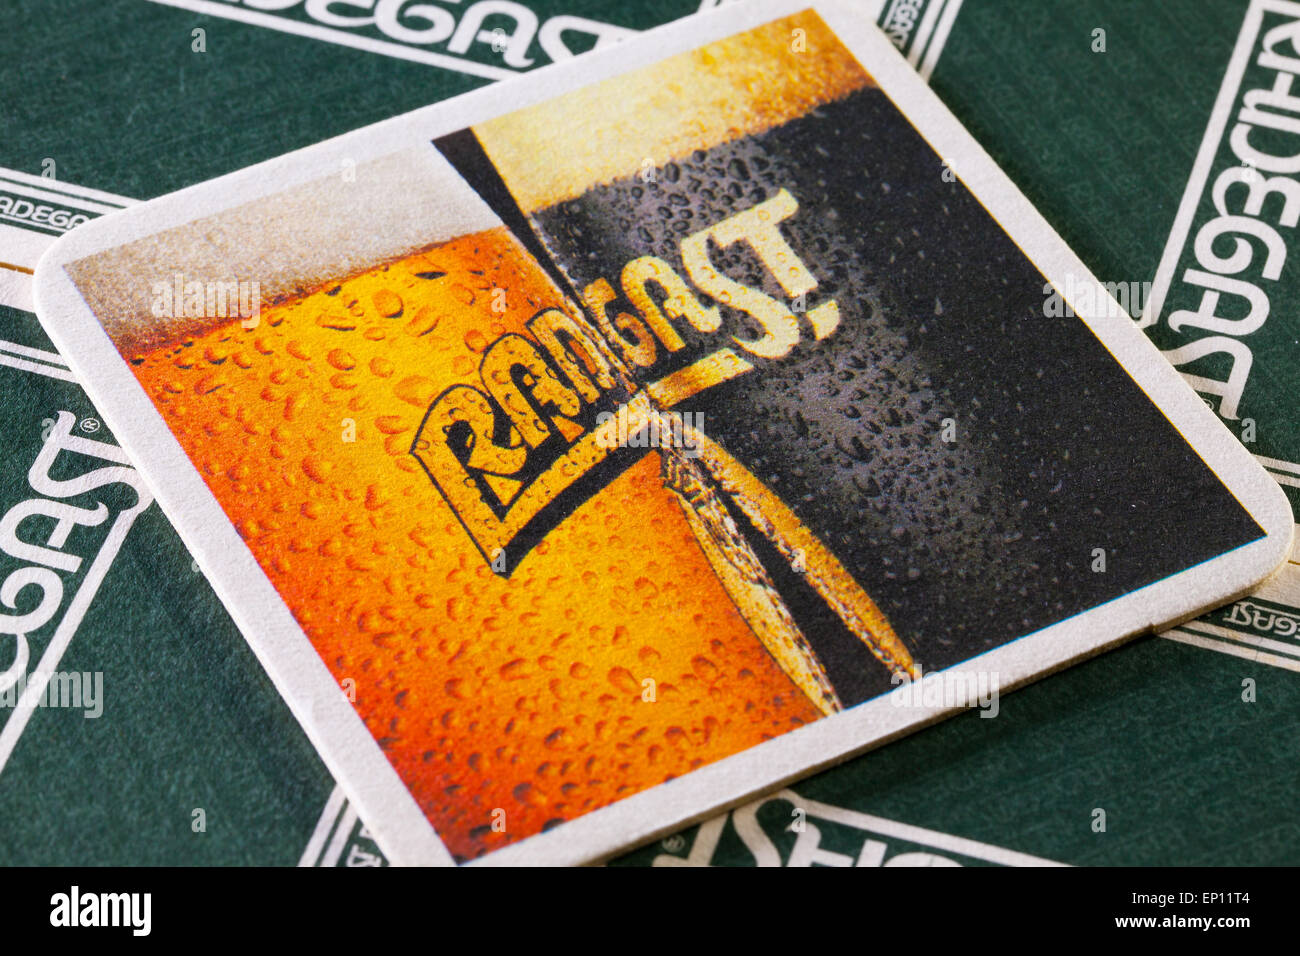 Praga,Republic-December ceca 3,2014:Beermats dalla birra radegast.radegast è una birra ceca prodotta a Nosovice, Foto Stock